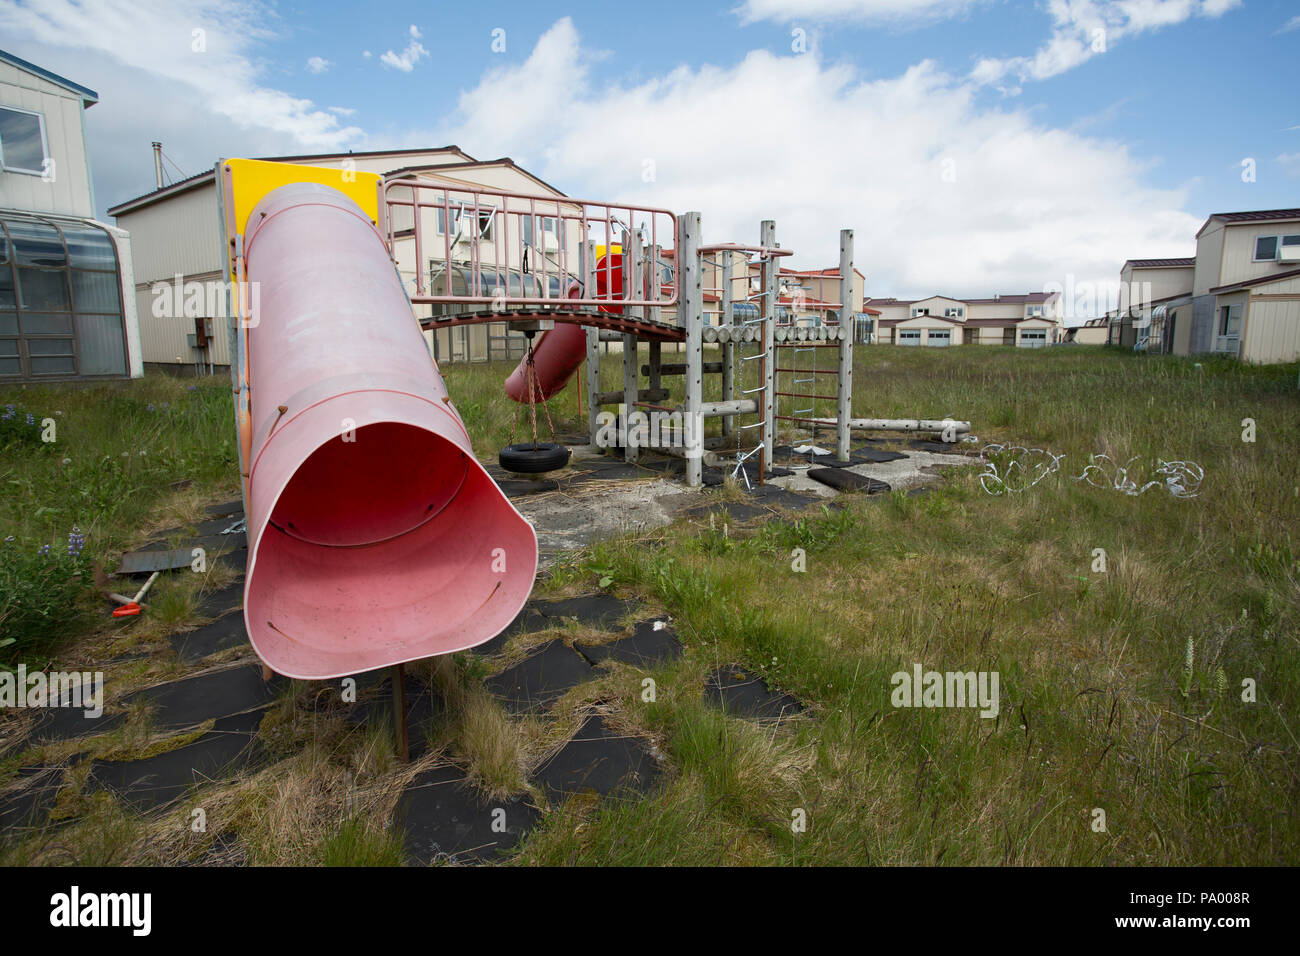 Parco giochi abbandonato, Adak, Alaska Foto Stock